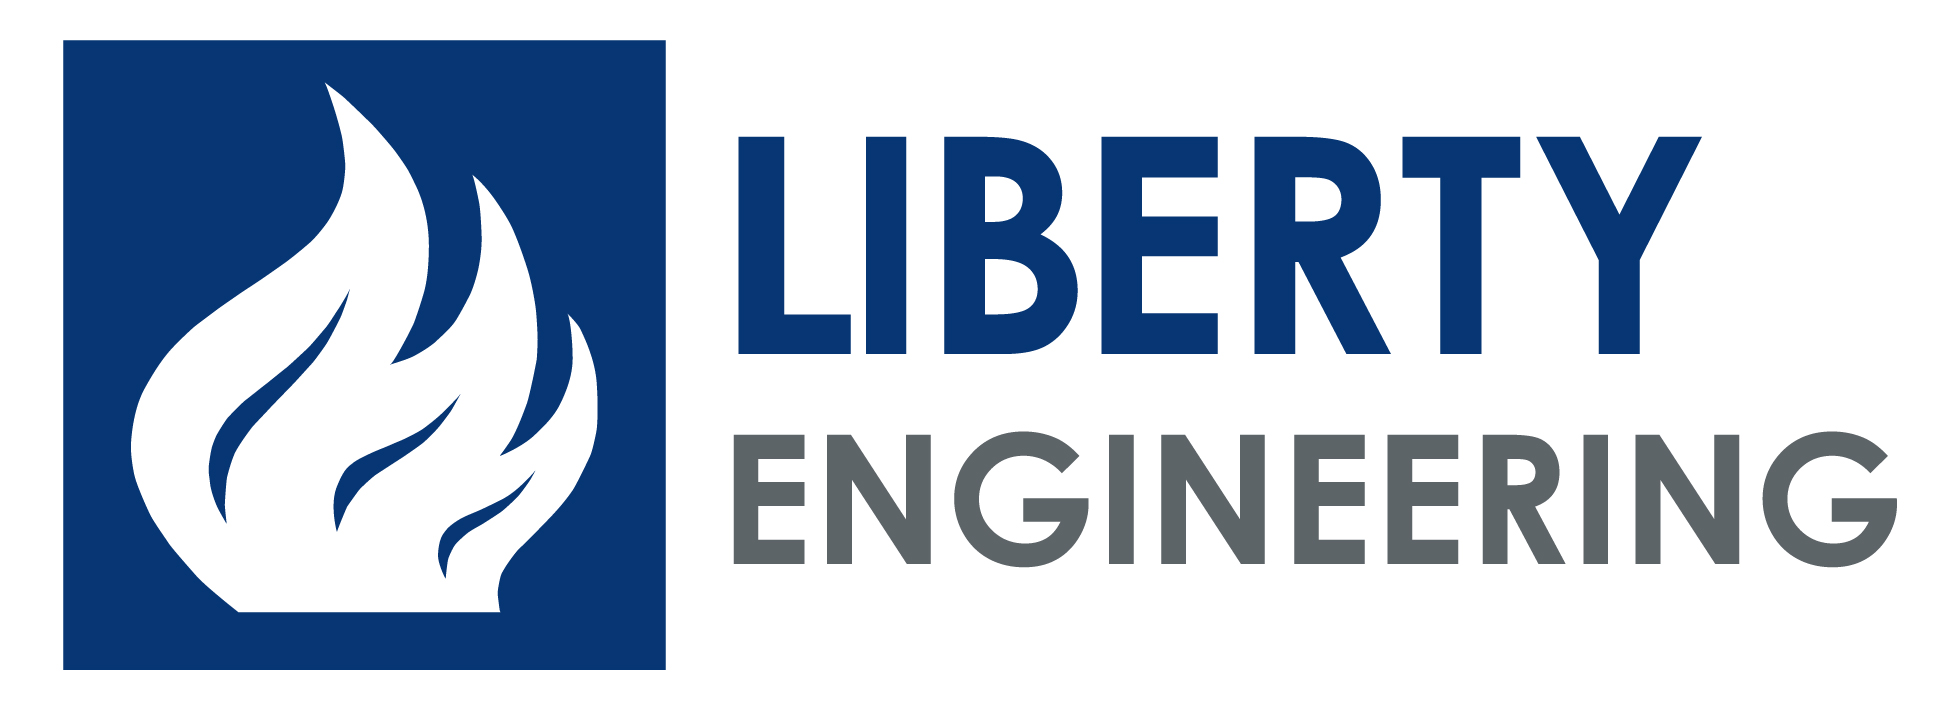 Liberty Engineering